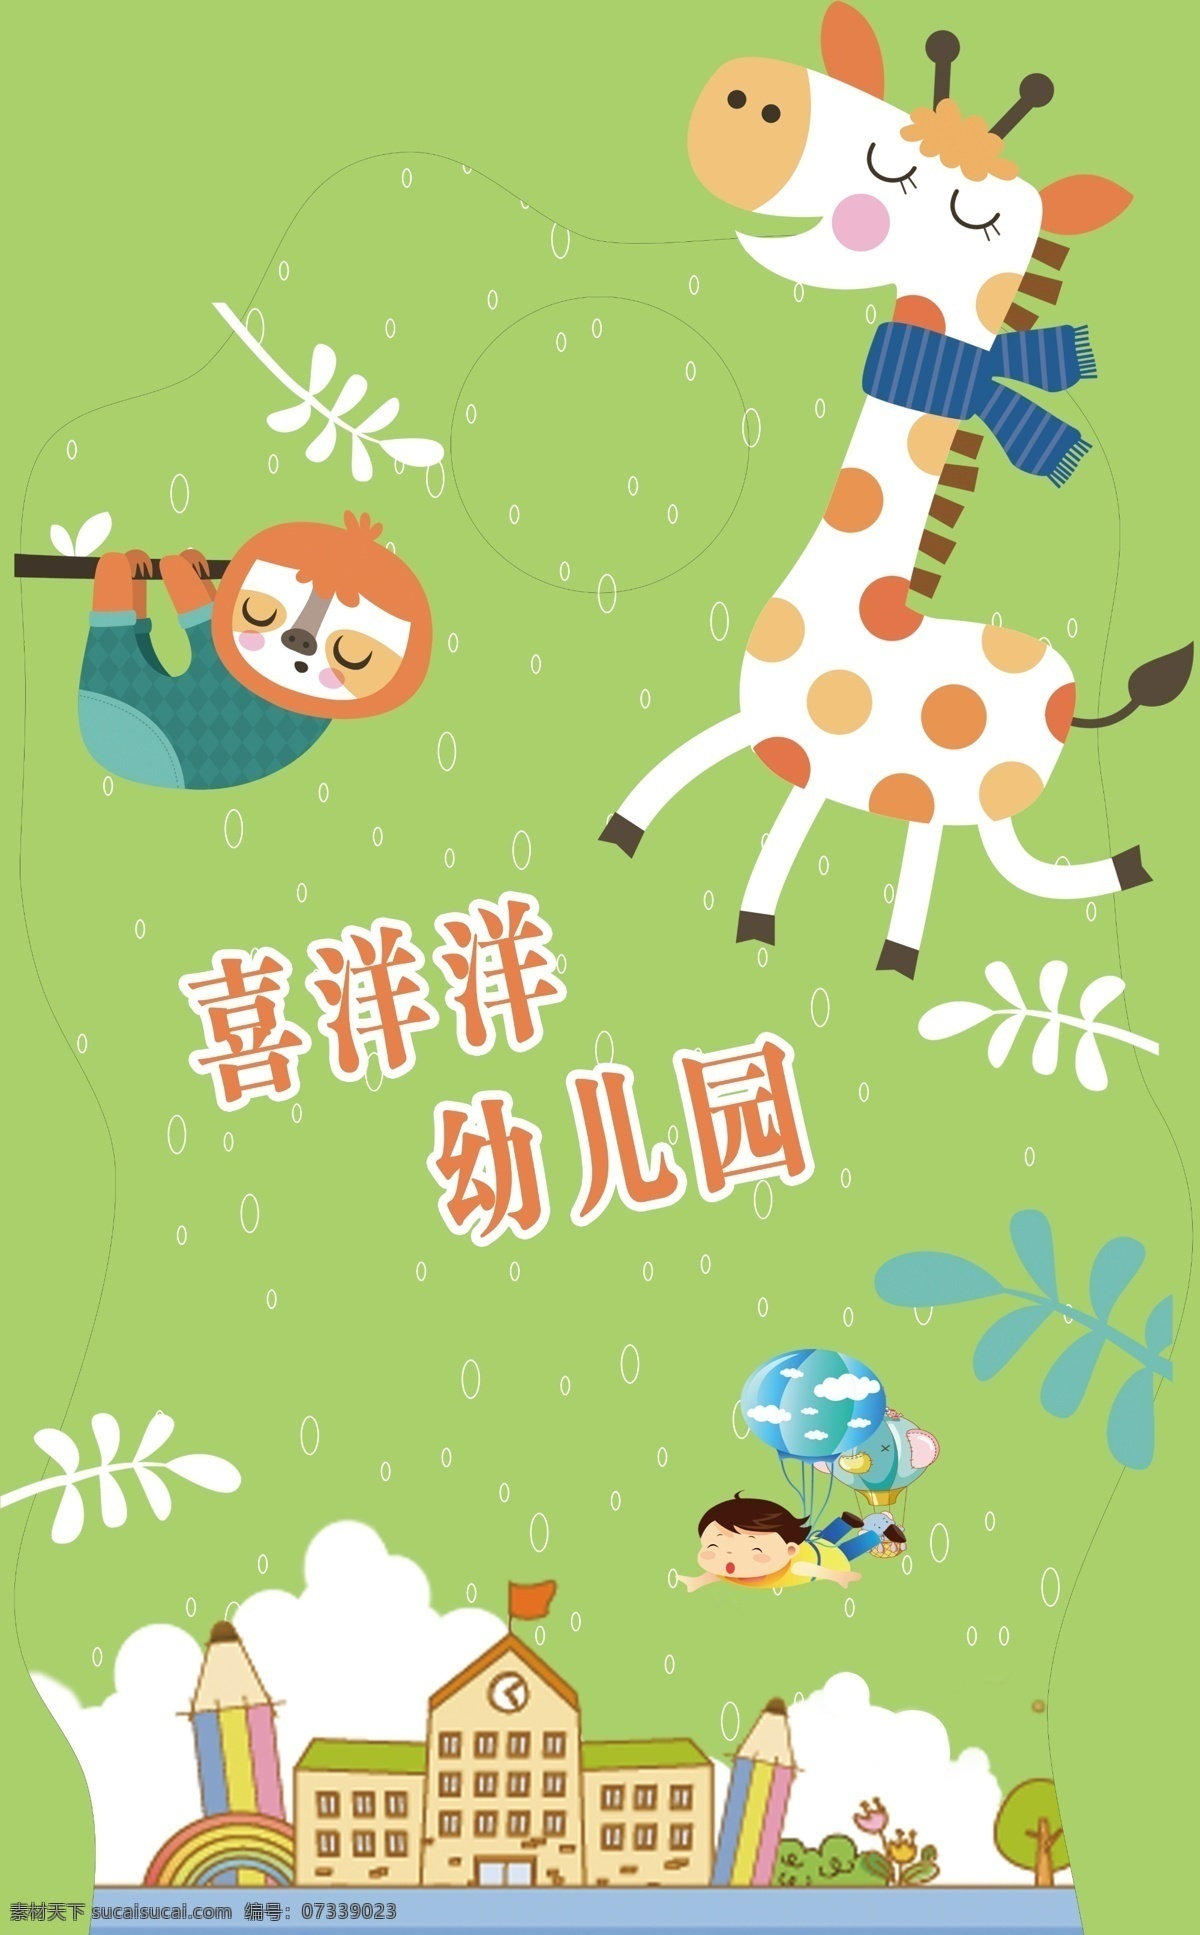 喜洋洋幼儿园 卡通 可爱卡通 斑马 小猴子 异型牌